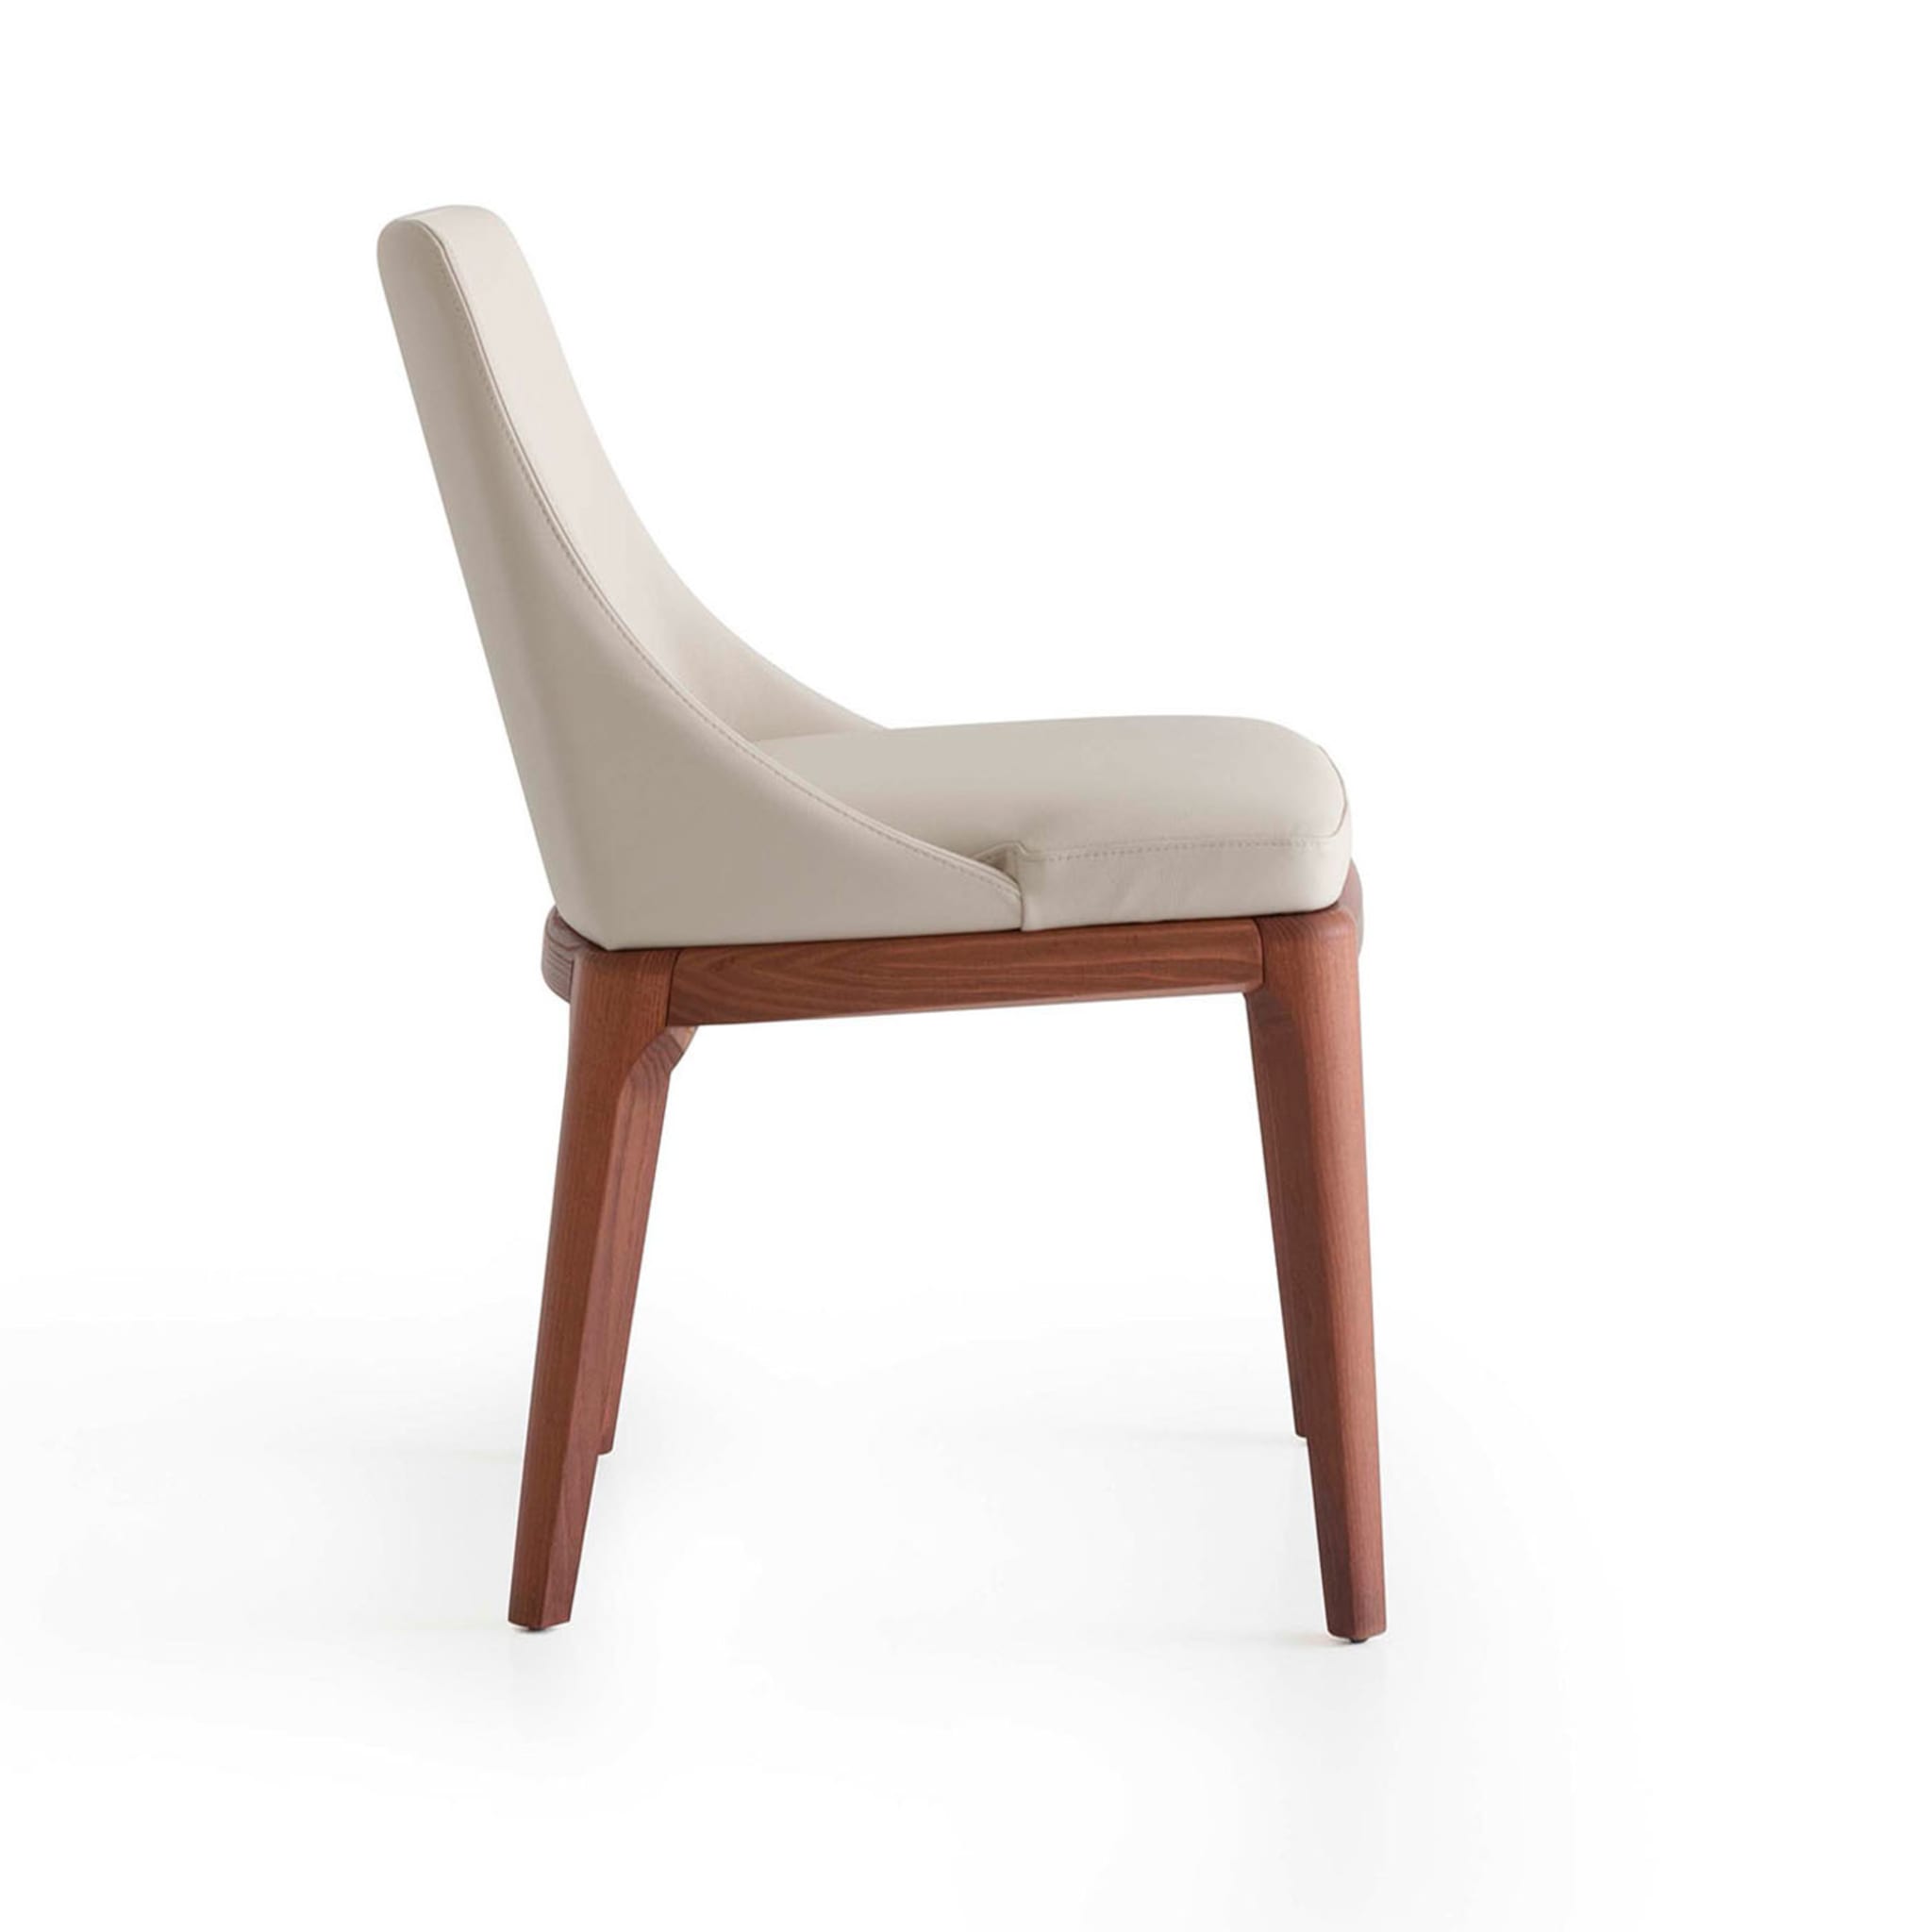 Antigona White Leather Chair - Alternative view 2